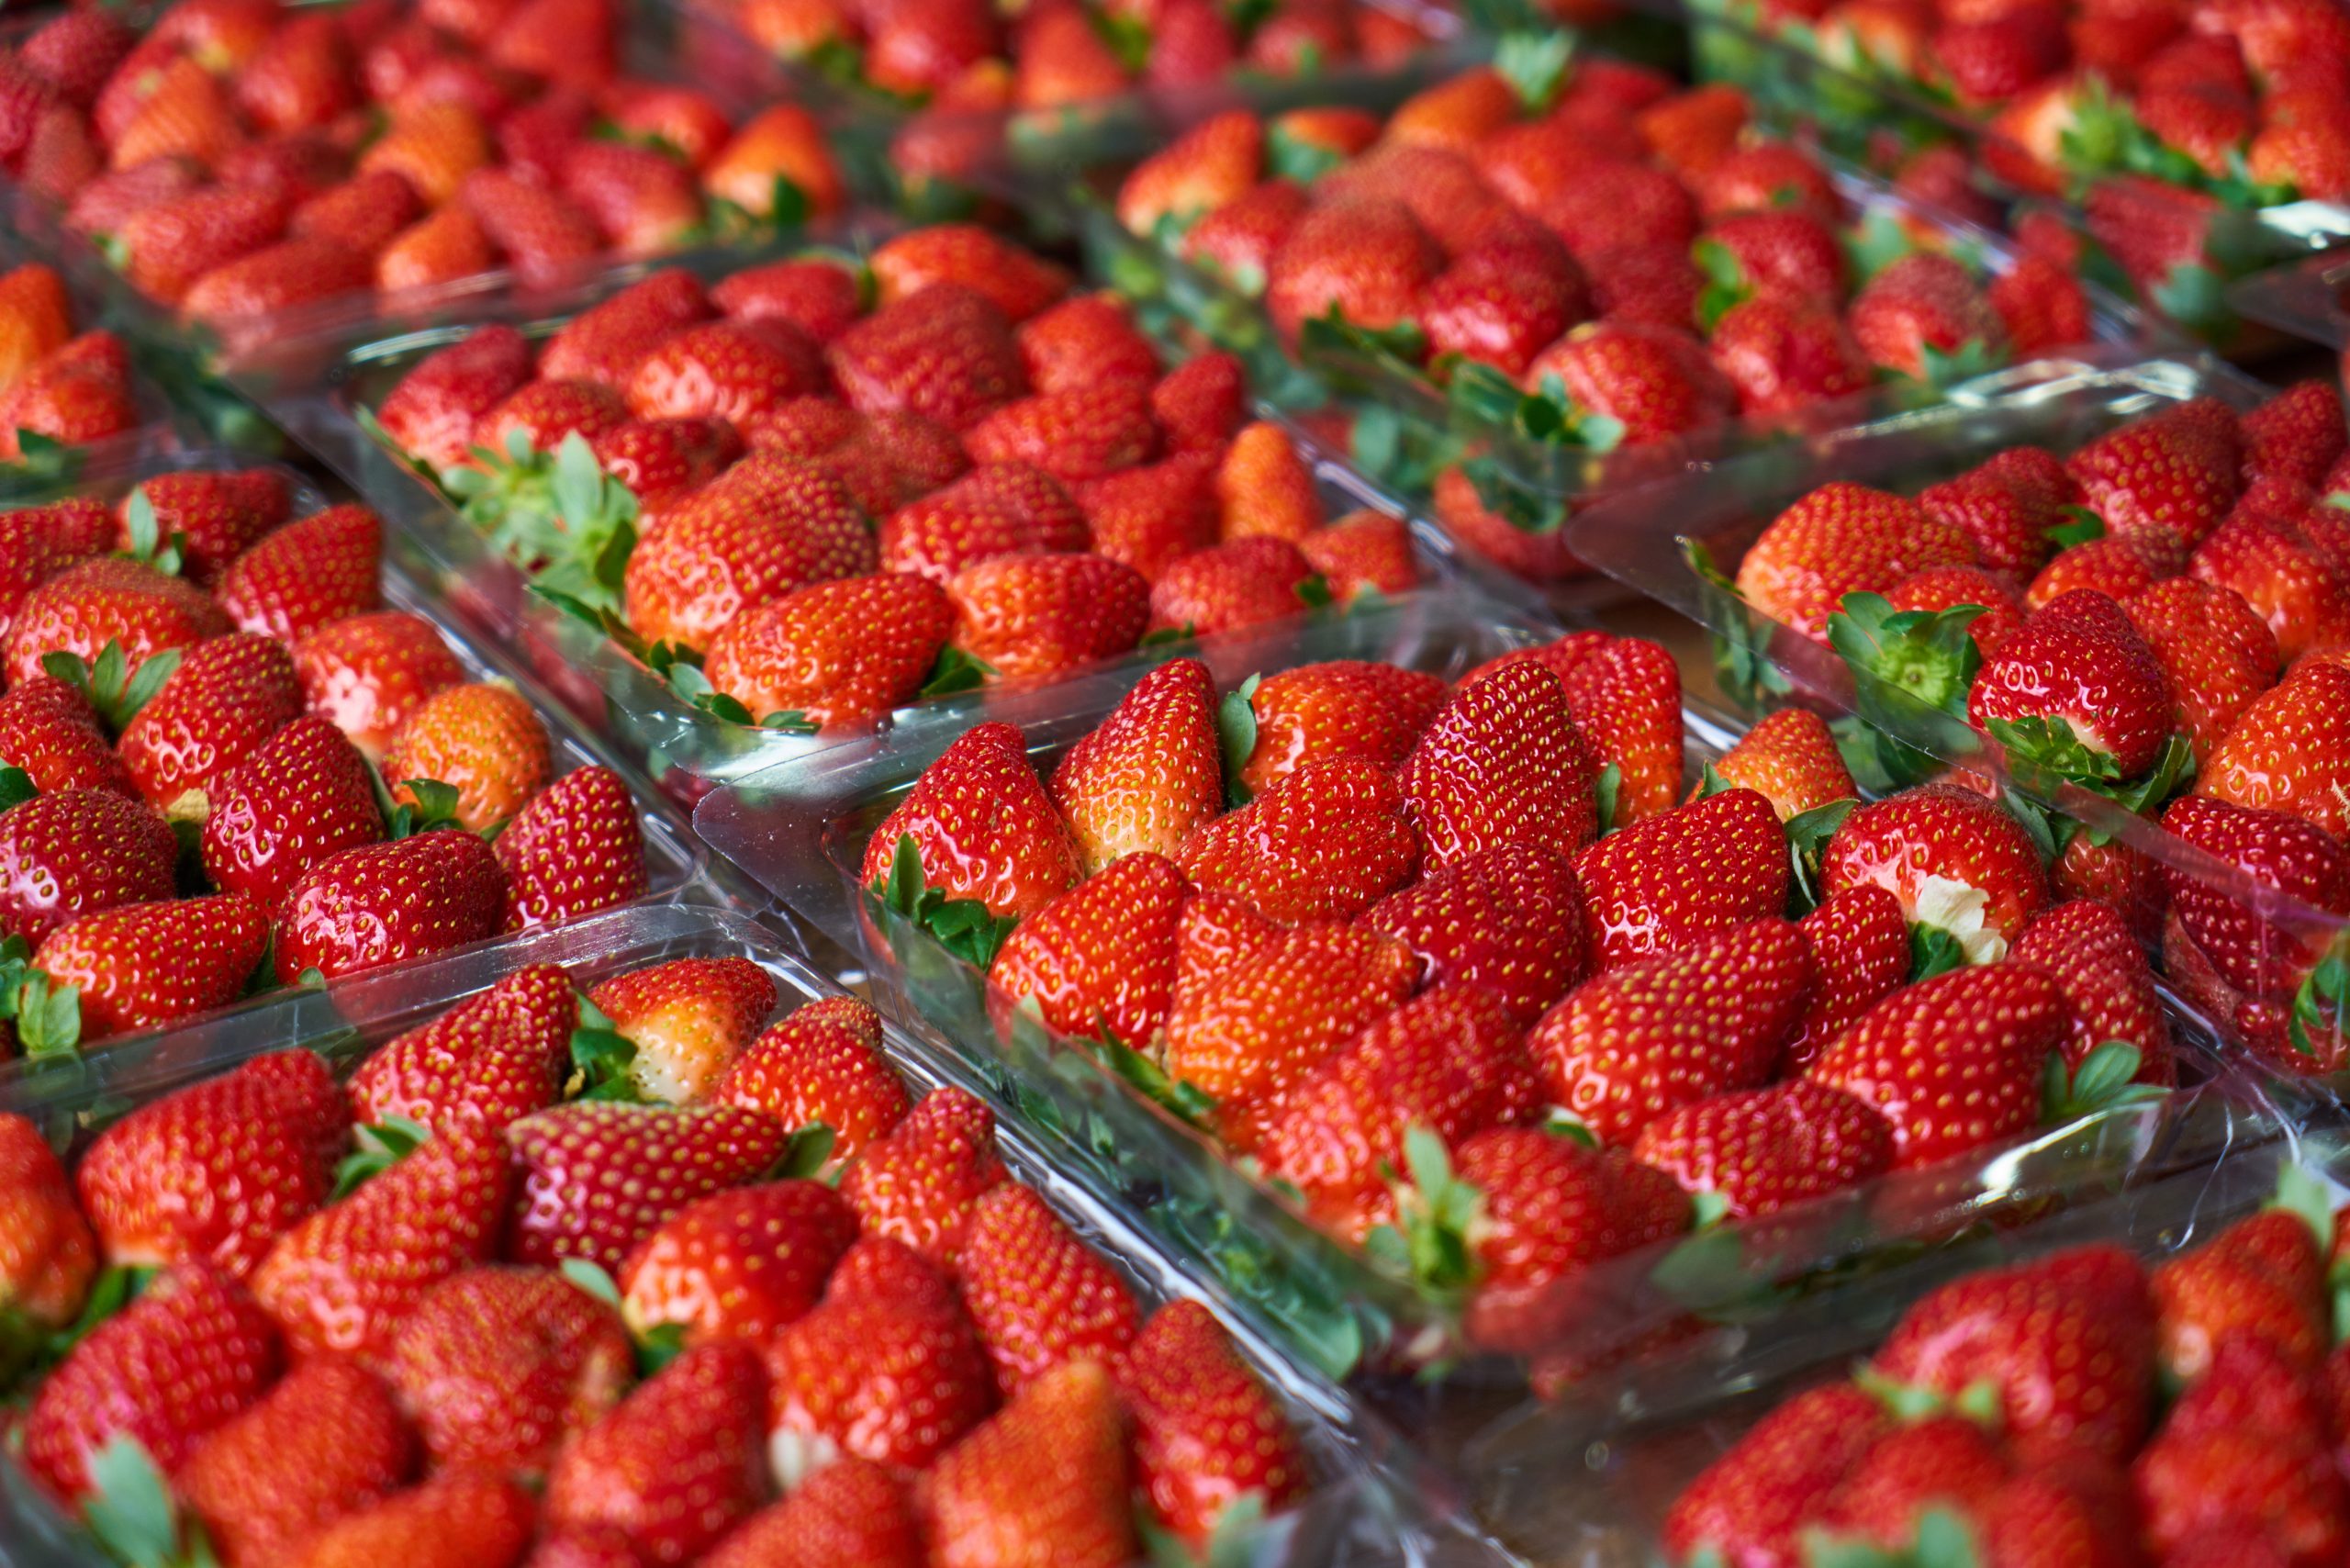 Ripe strawberries ready to eat. Copyright: FreeStockCenter/Freepik.